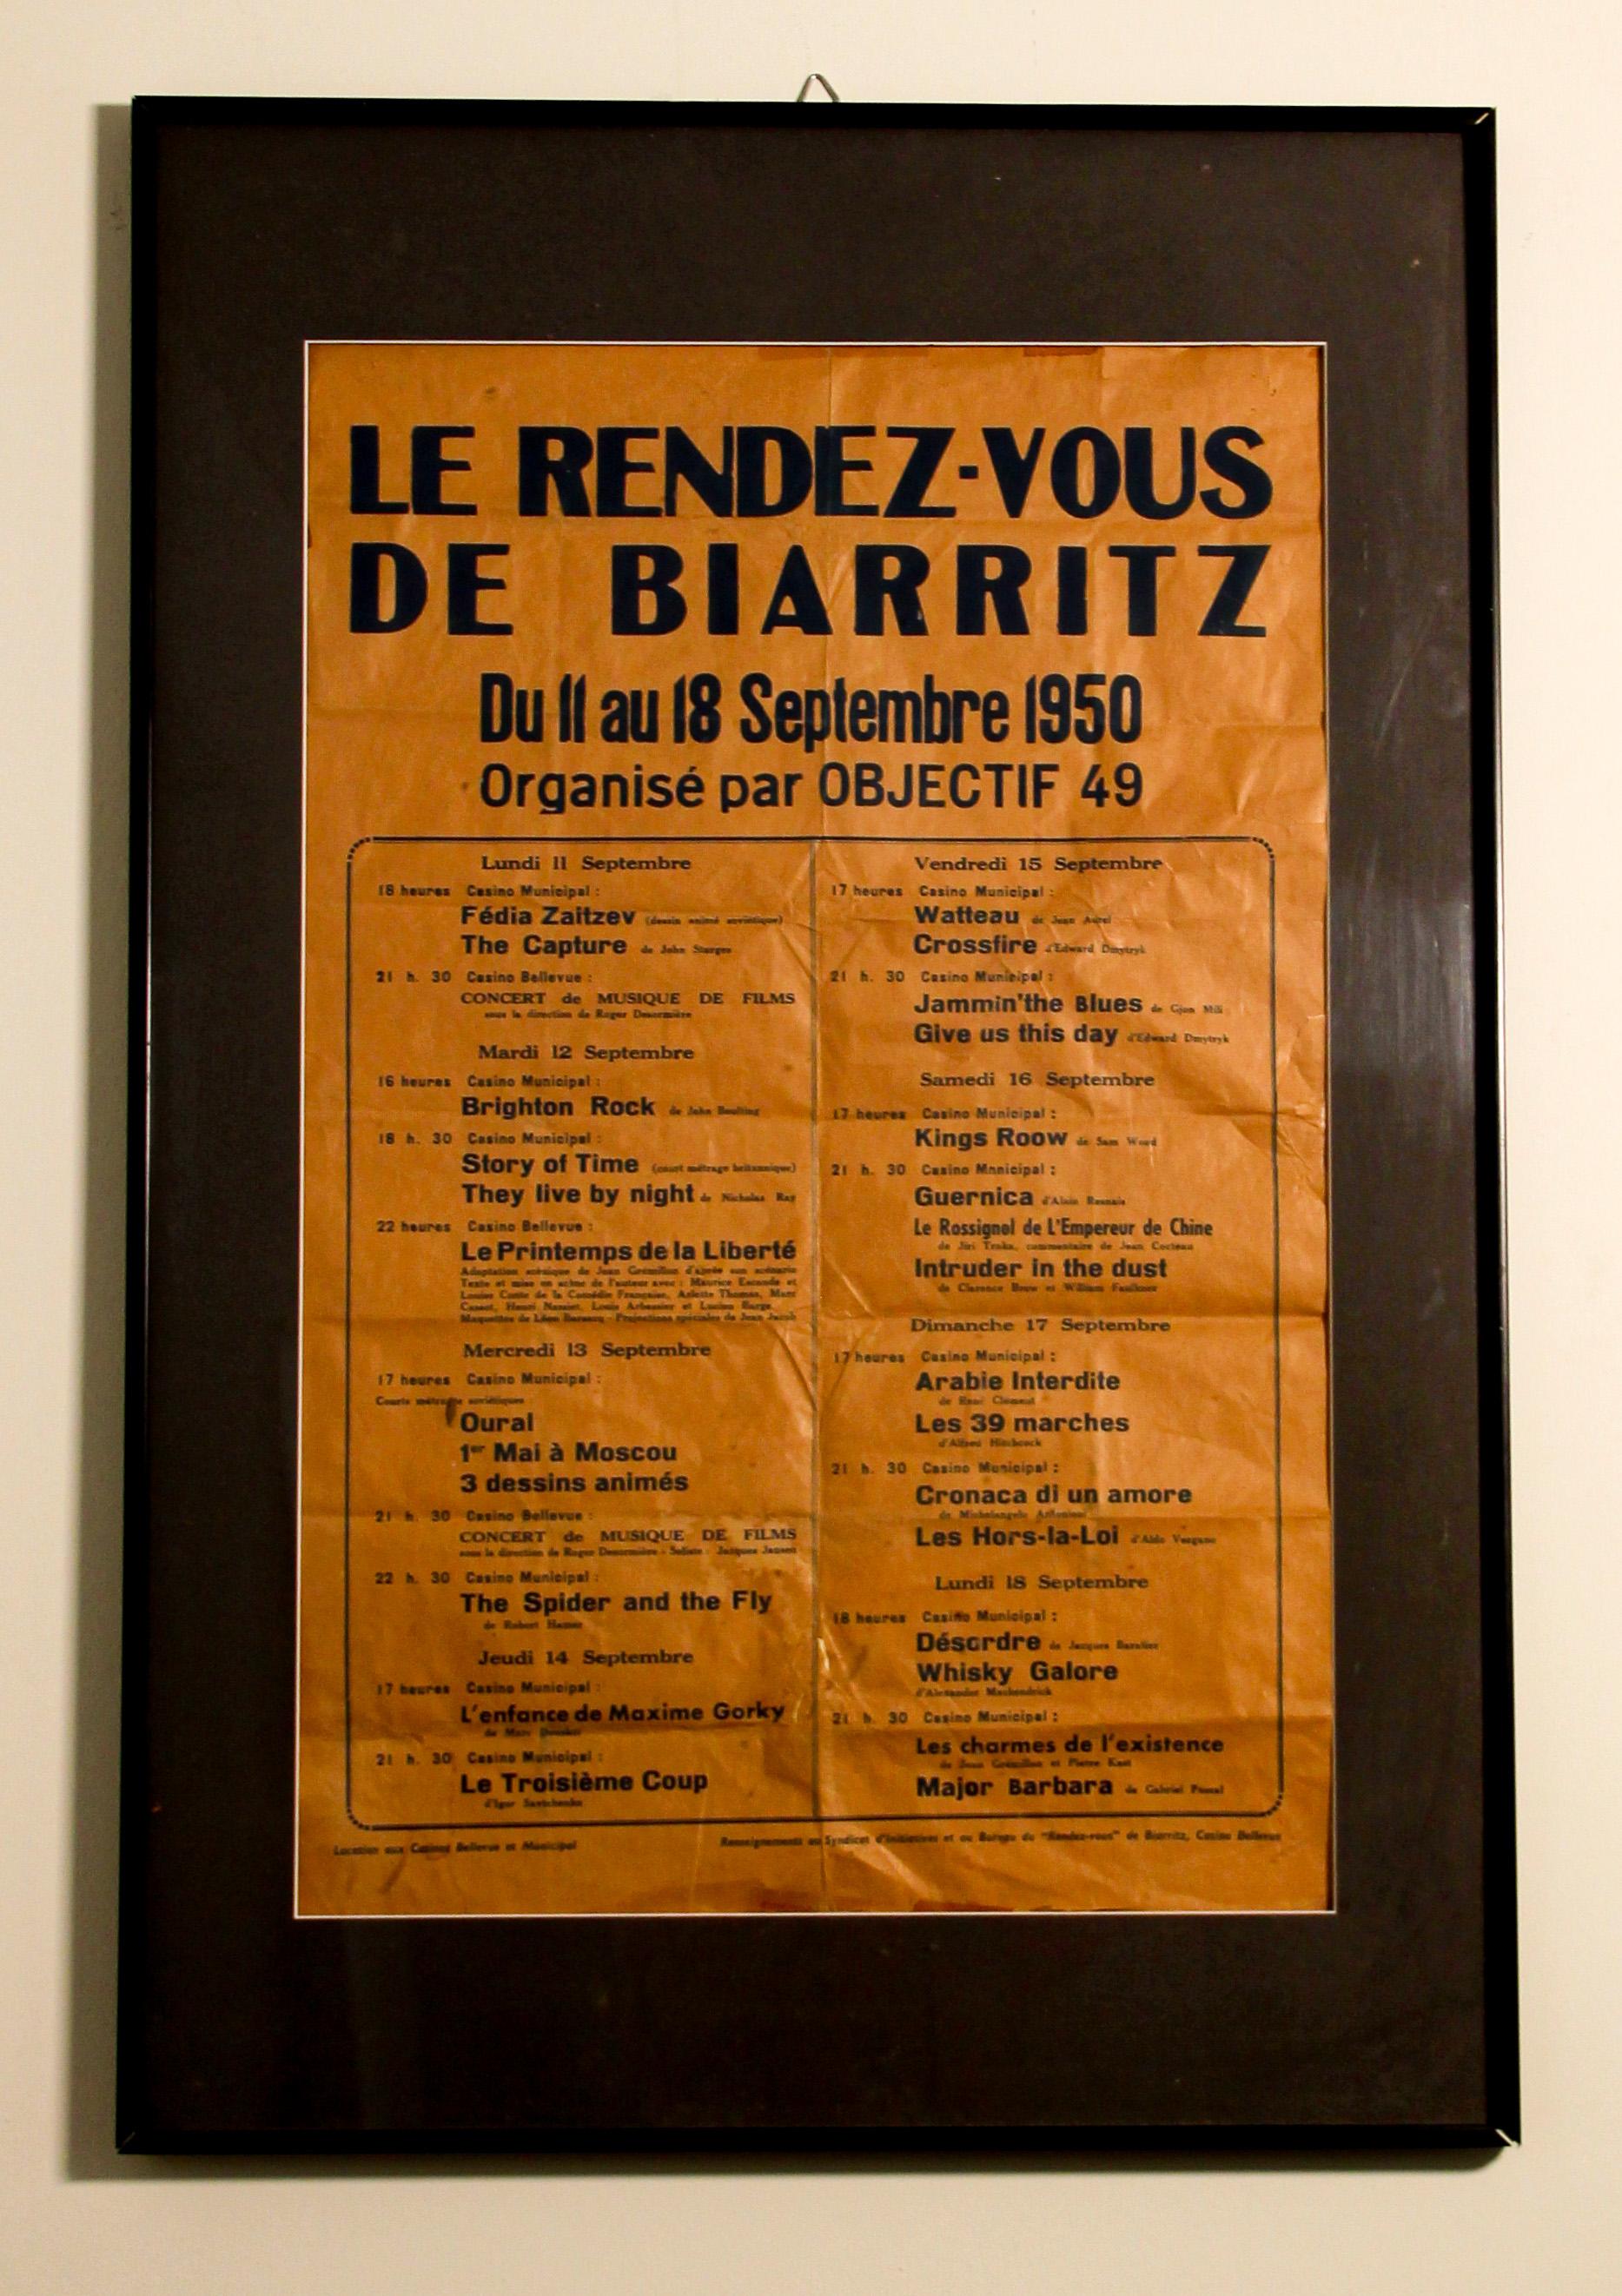 Le Rendez Vous De Biarritz French poster.
Du 11 au 18 Septembre 1950, organize par OBJECTIF 49.
Vintage 1950 French Poster for a French Movie Festival in Biarritz framed.

 